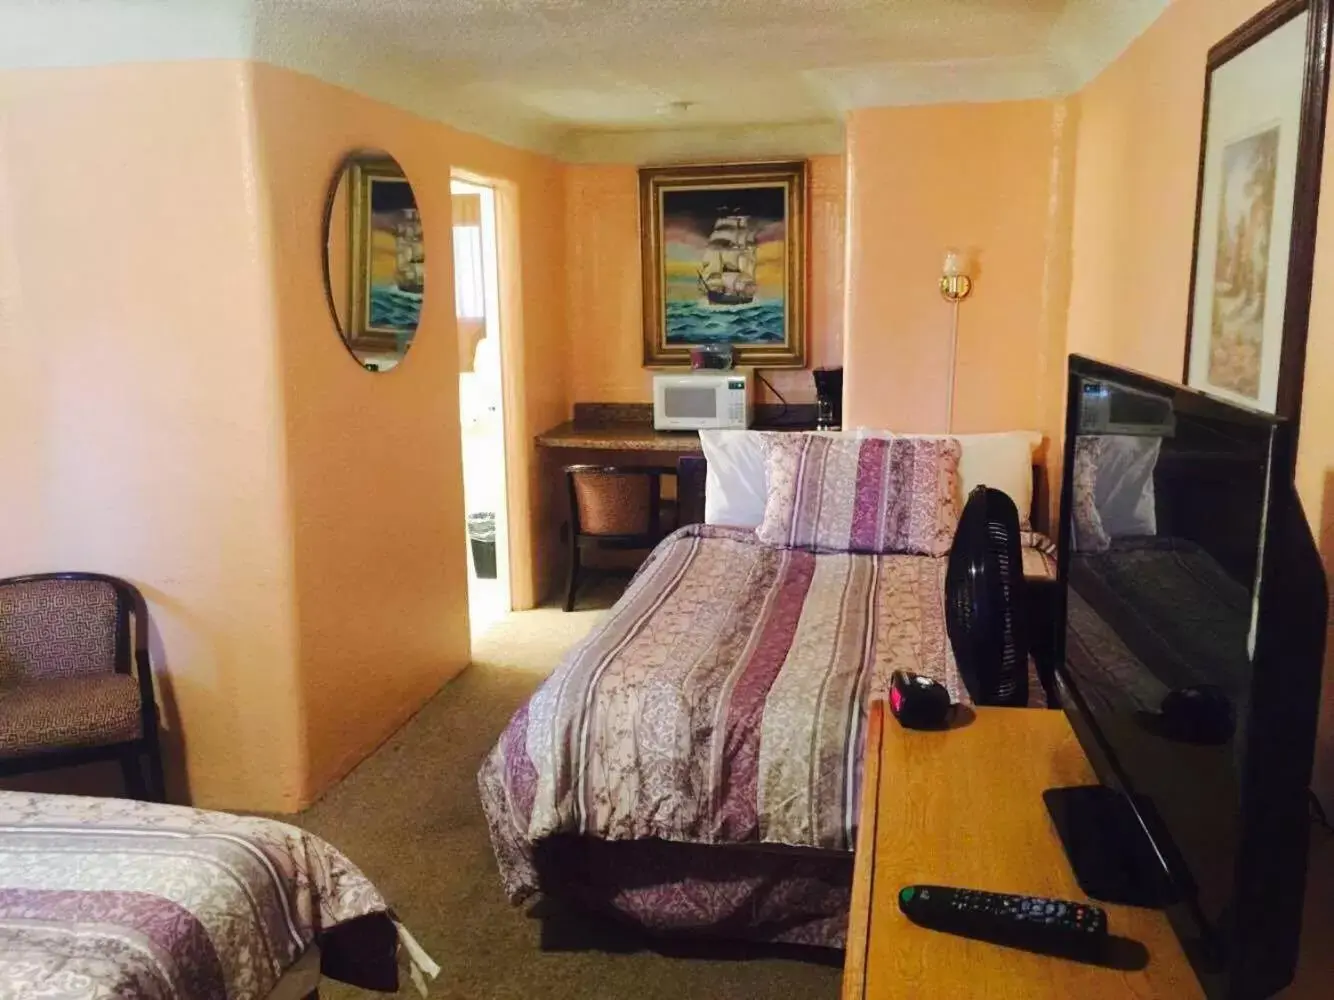 Bed, Room Photo in Budget Inn Motel Chemult